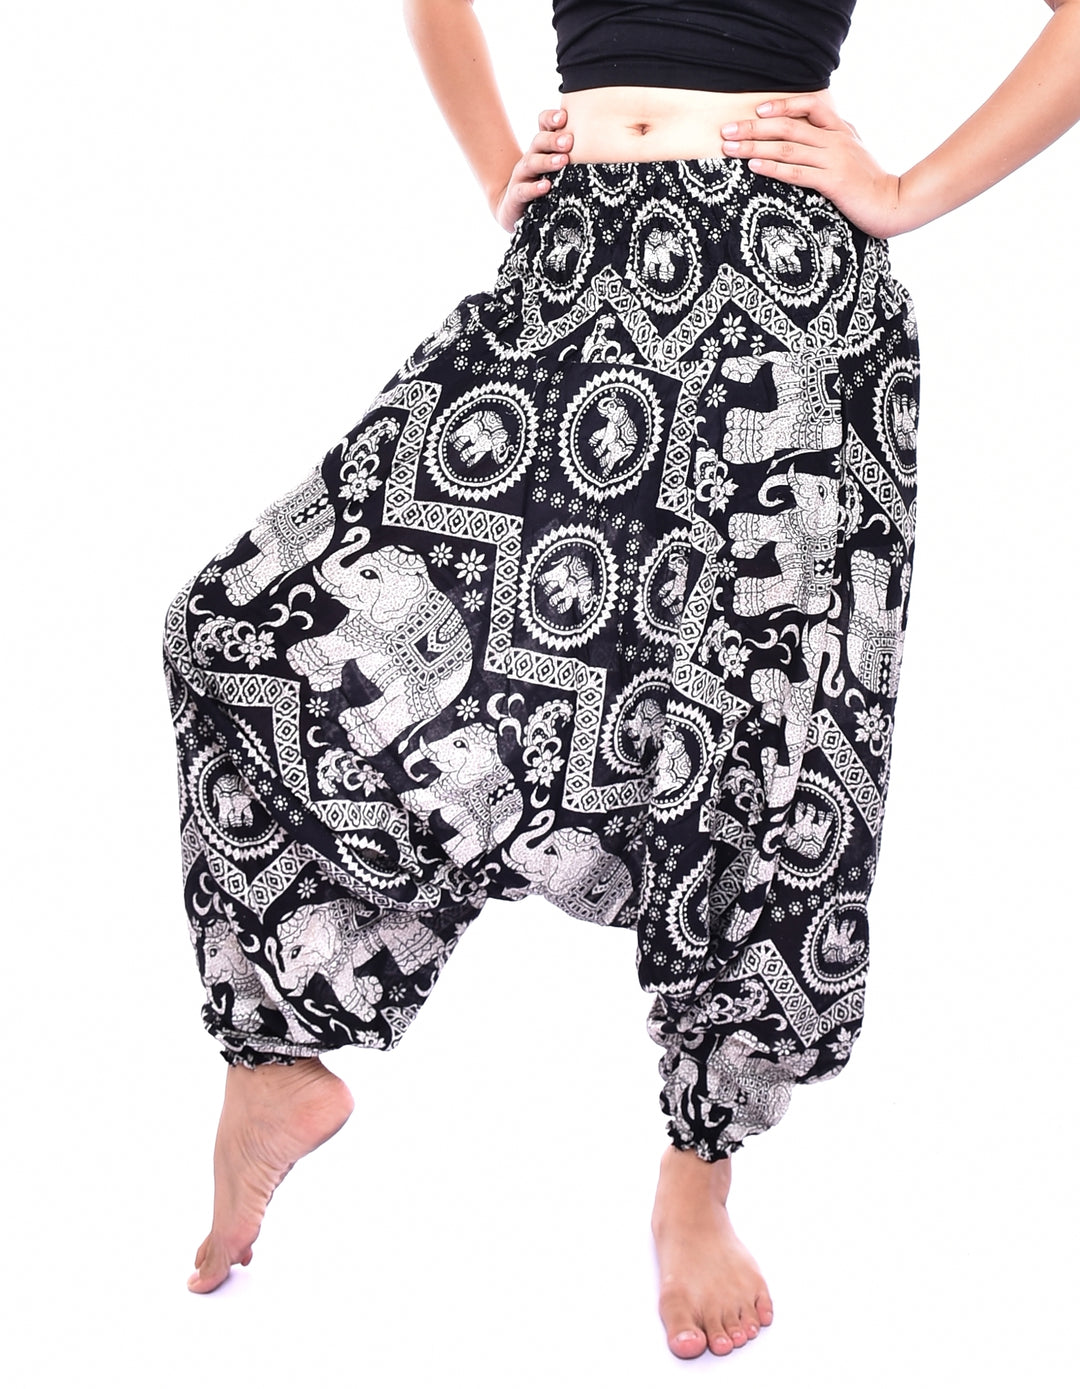 Bohotusk Black Elephant Print Low Crotch Harem Pants Womens Elasticated Smocked Waist S/M